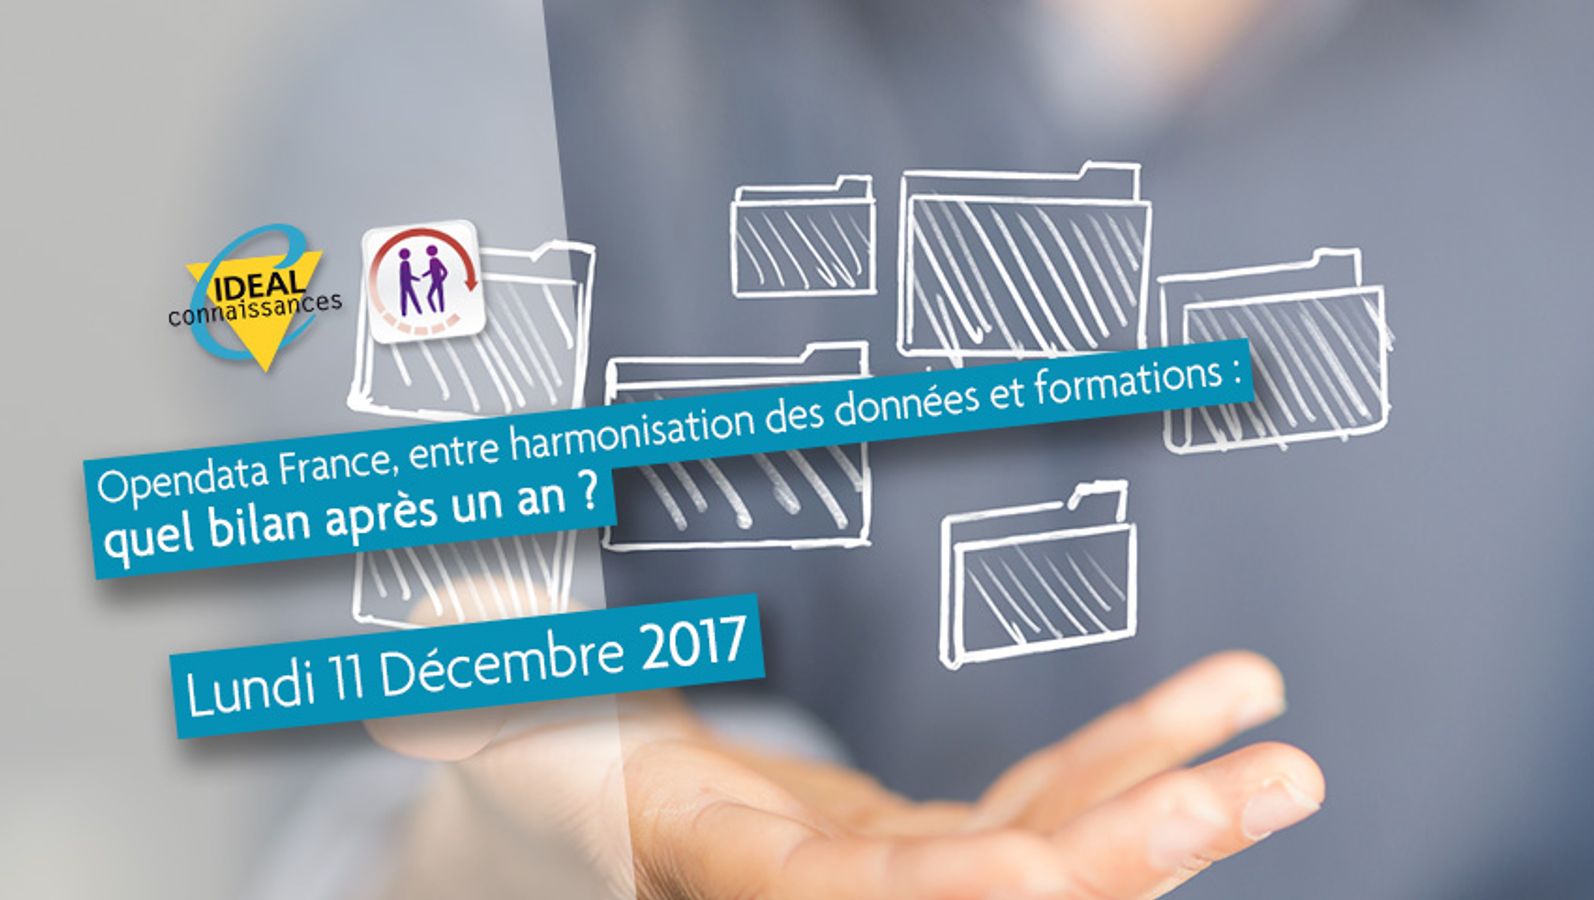 Opendata France, entre harmonisation des données et formations : quel bilan après un an ?